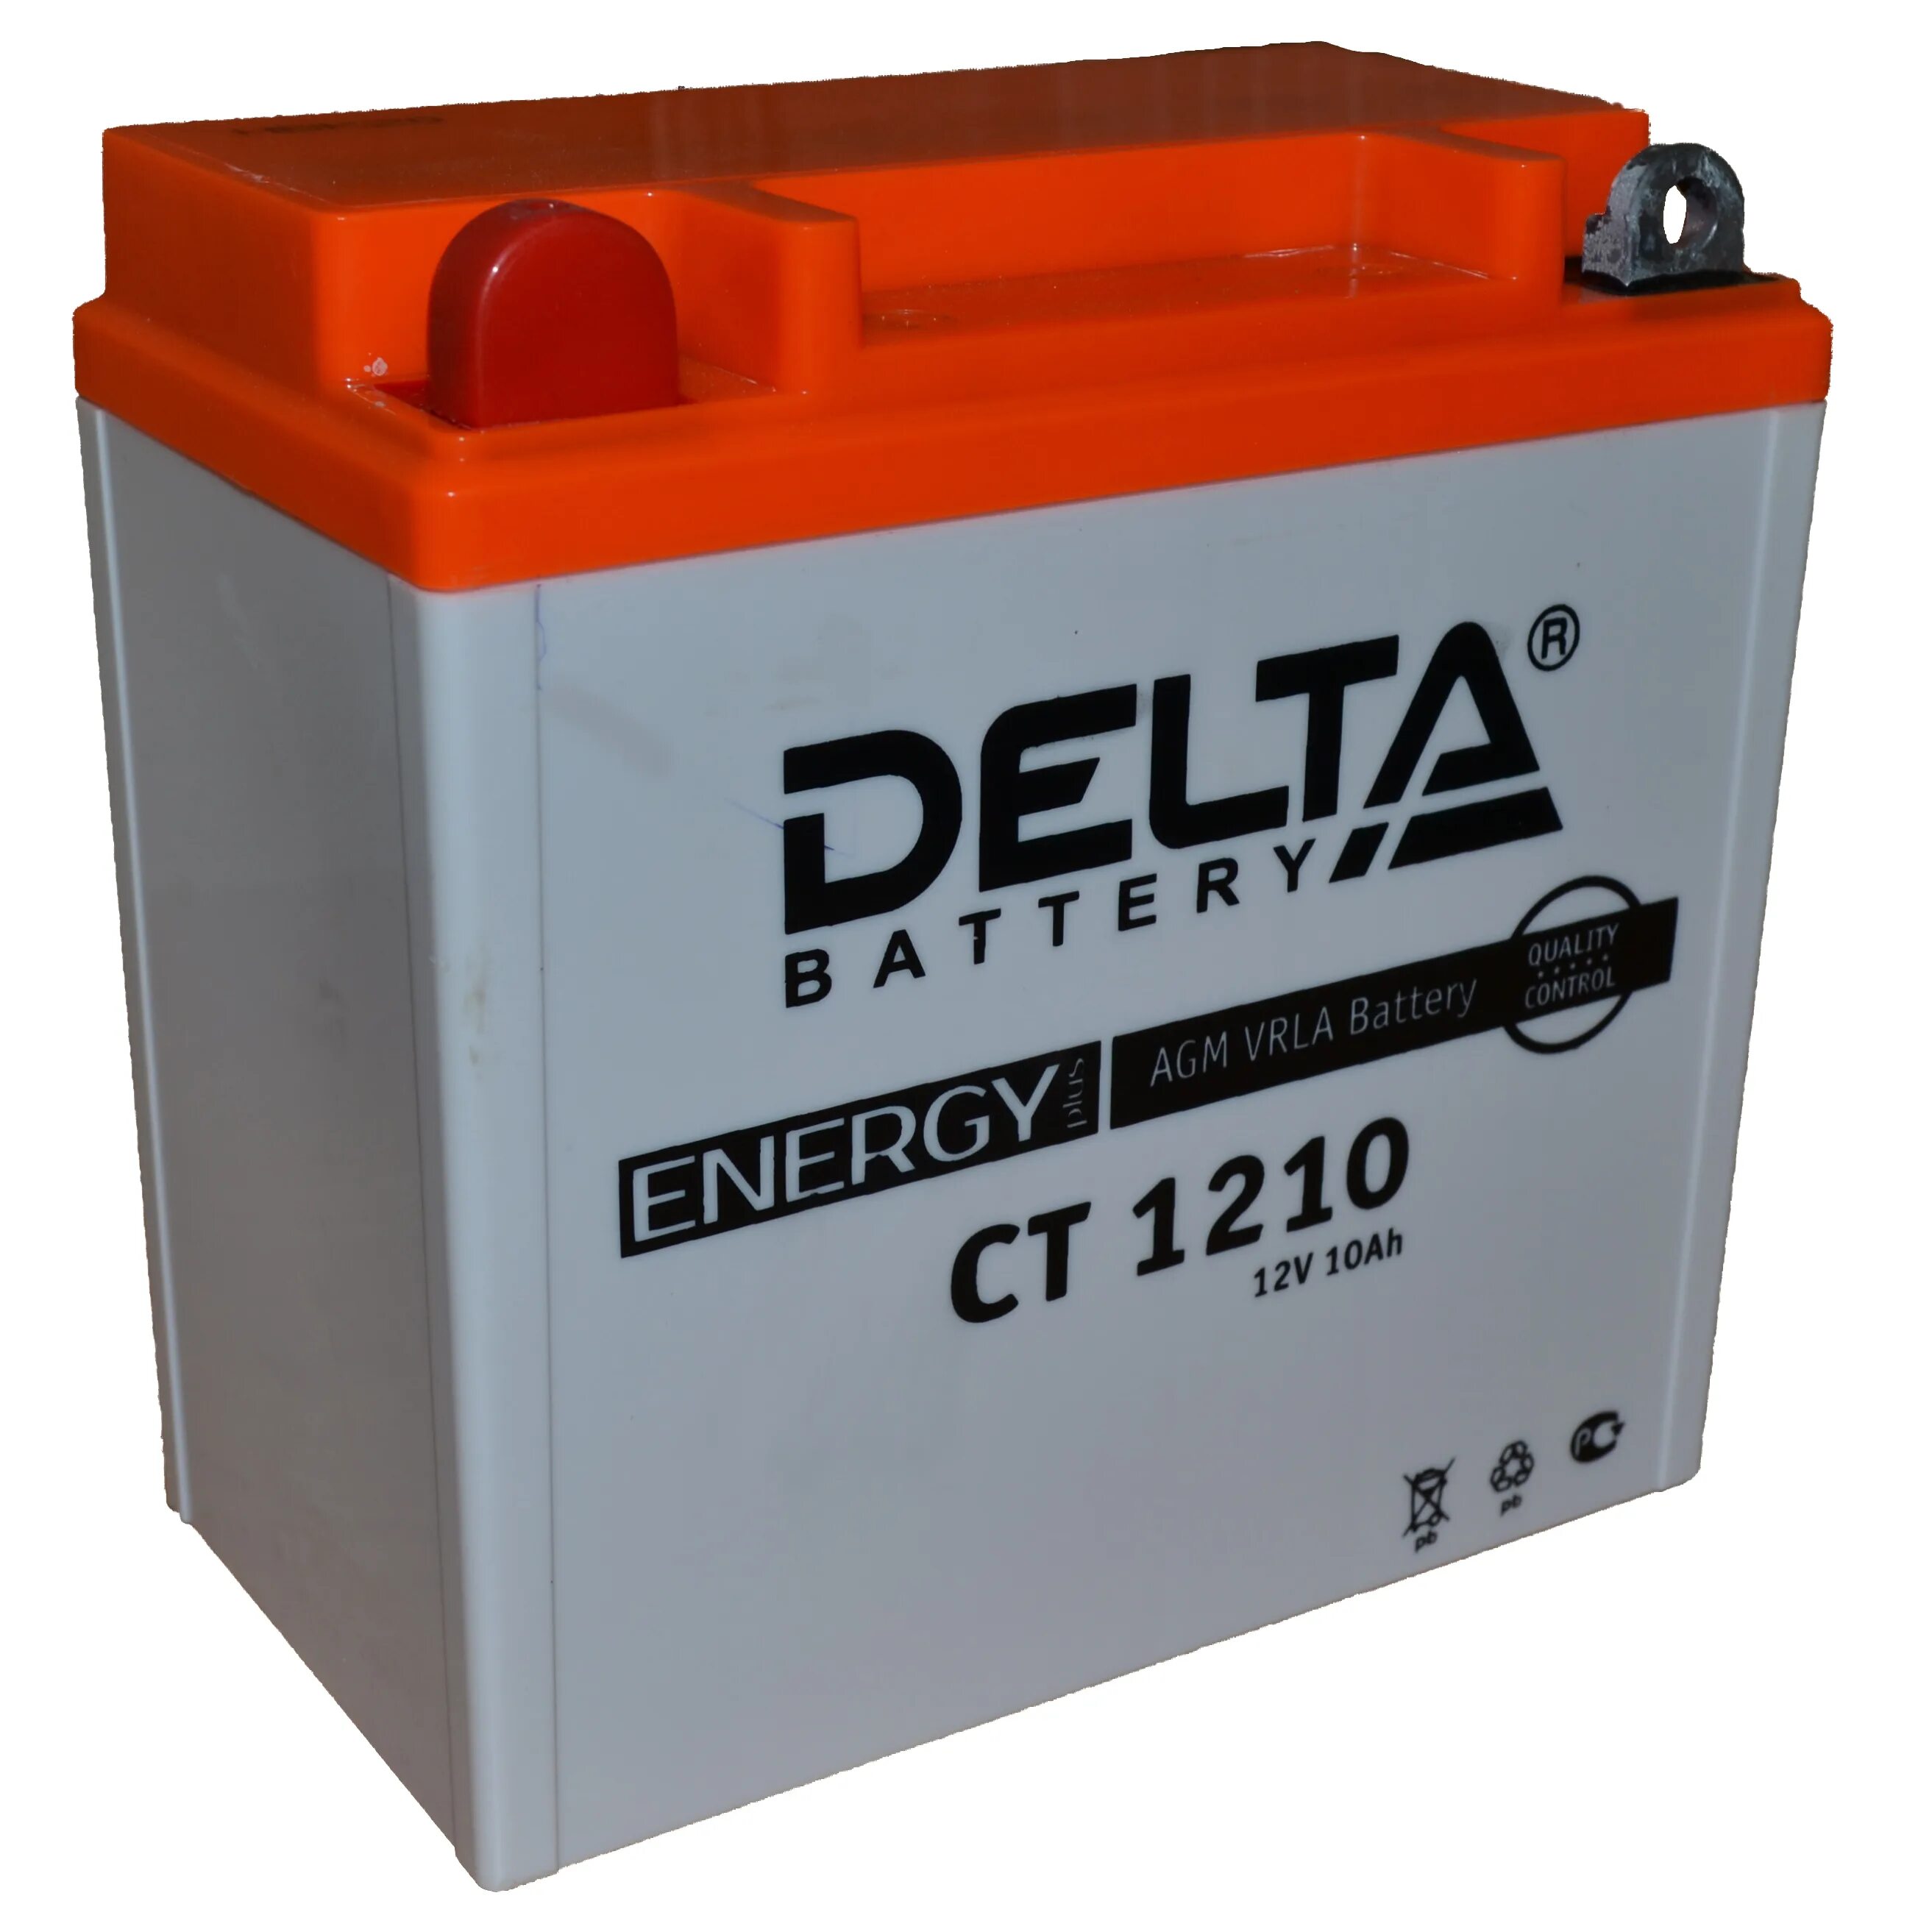 Аккумулятор 10 а ч. Аккумулятор Delta CT 1212. Delta CT 12/10 аккумуляторная батарея. Аккумулятор Delta 1210.1 12v AGM. Delta ct1210 аккумулятор мото.